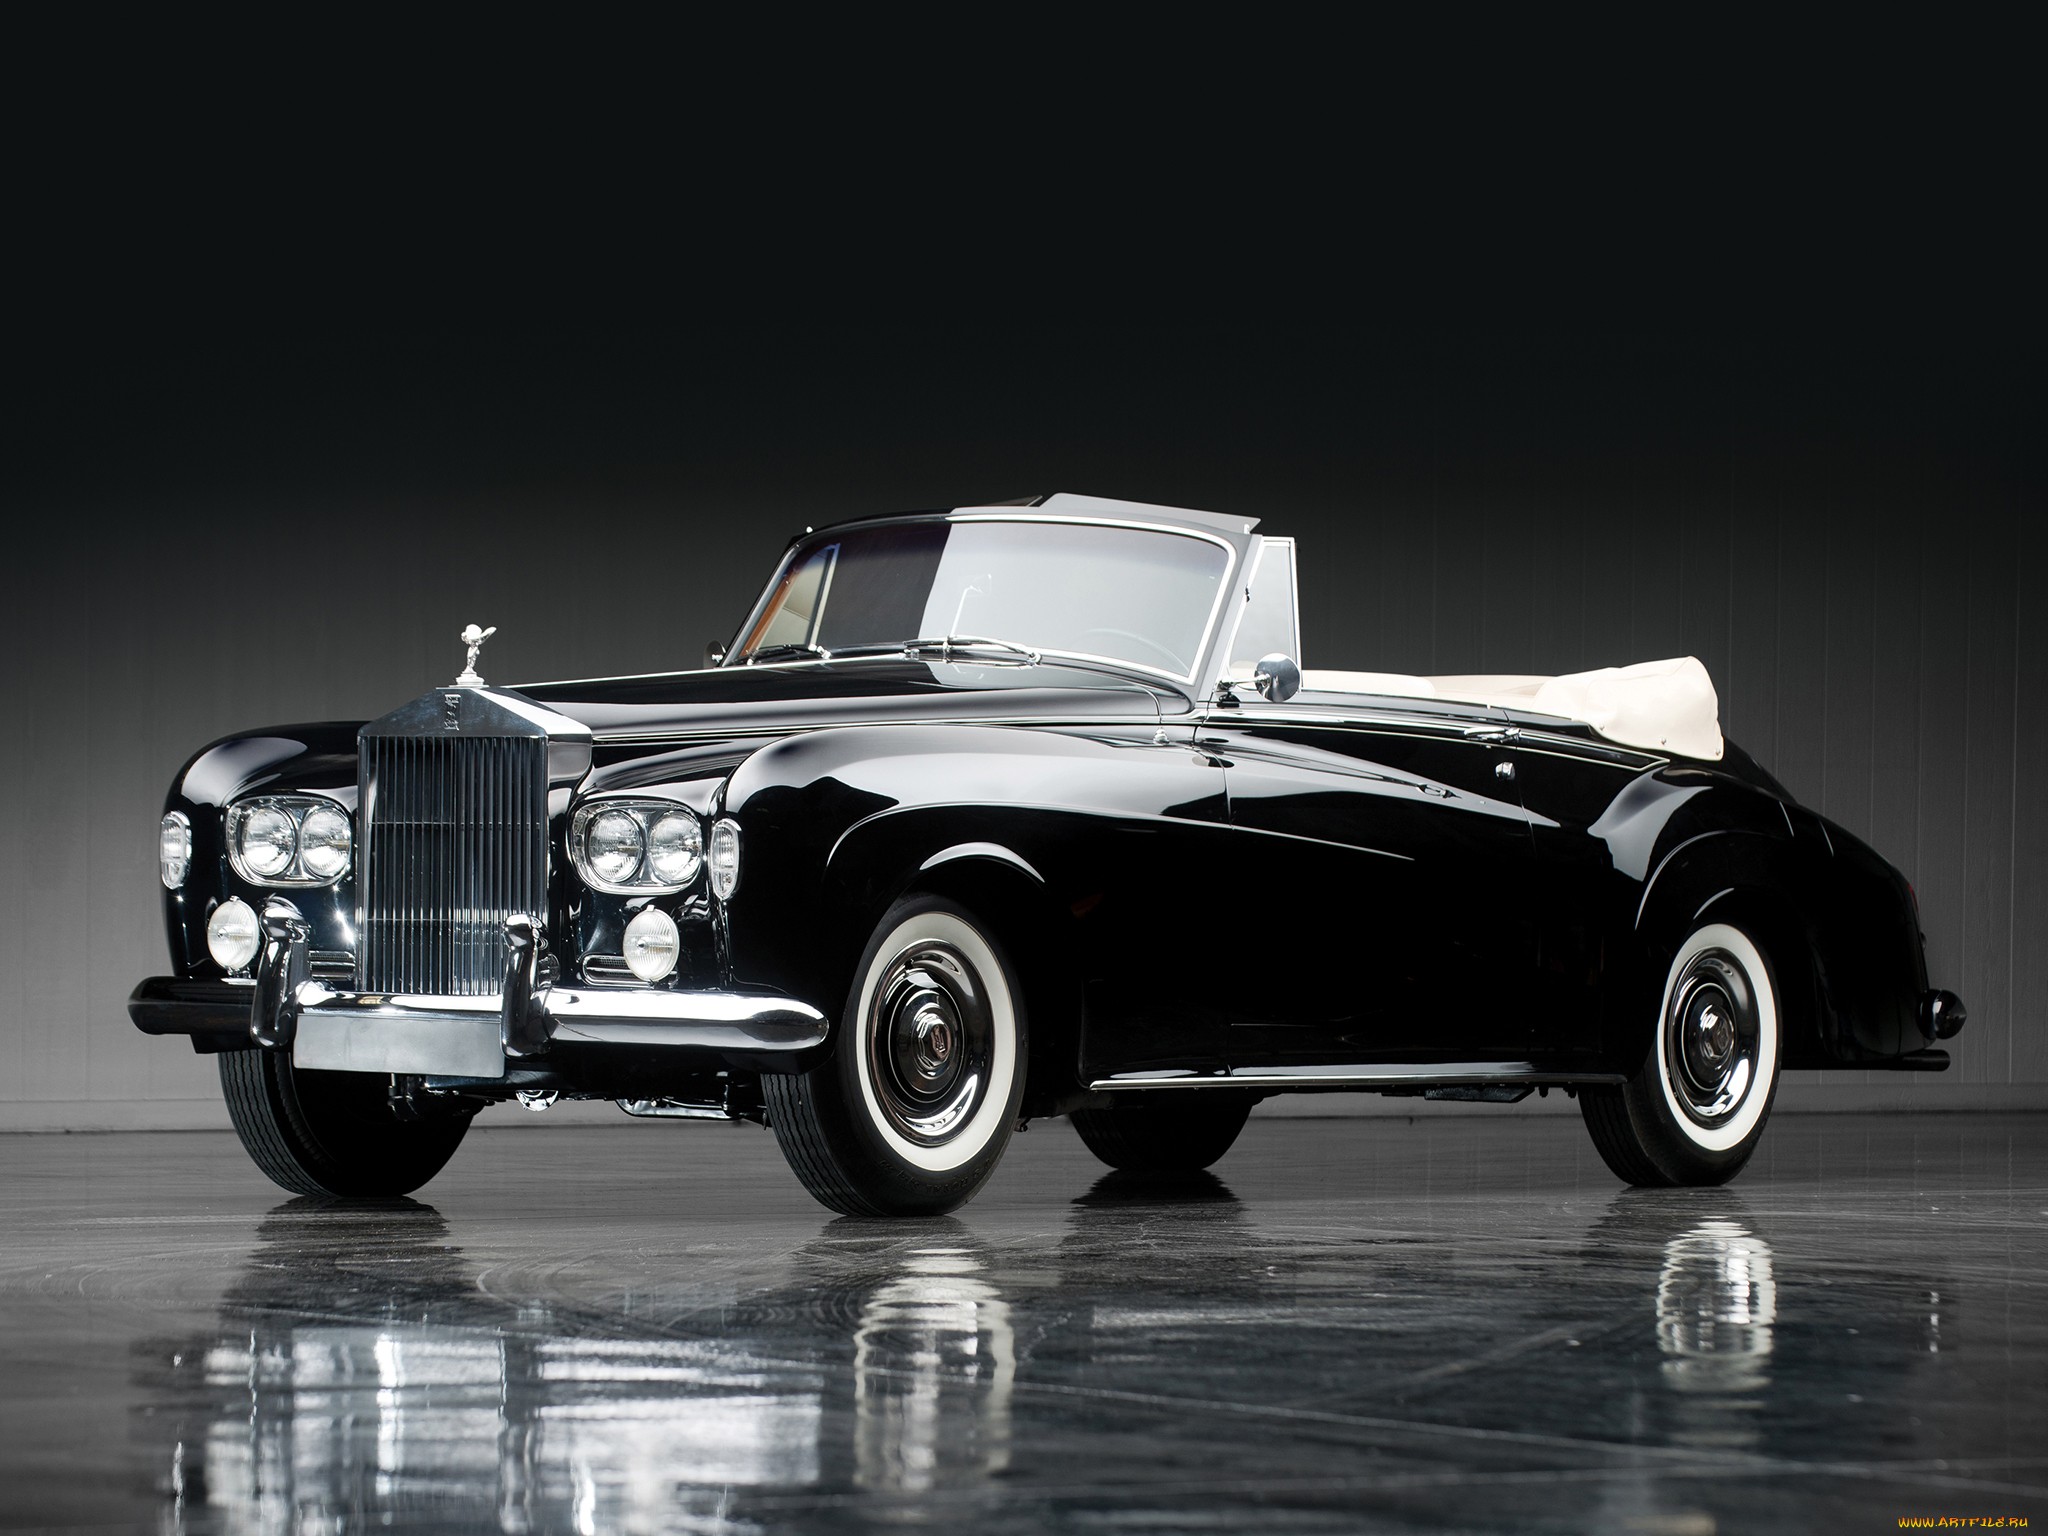 Rolls Royce – tên tuổi của sự sang trọng và đẳng cấp. Bạn hào hứng muốn thưởng thức những hình ảnh đẹp của dòng xe này? Chúng tôi mang đến cho bạn bộ sưu tập ảnh Rolls Royce đa dạng và ấn tượng, đem đến cho bạn trải nghiệm thú vị.